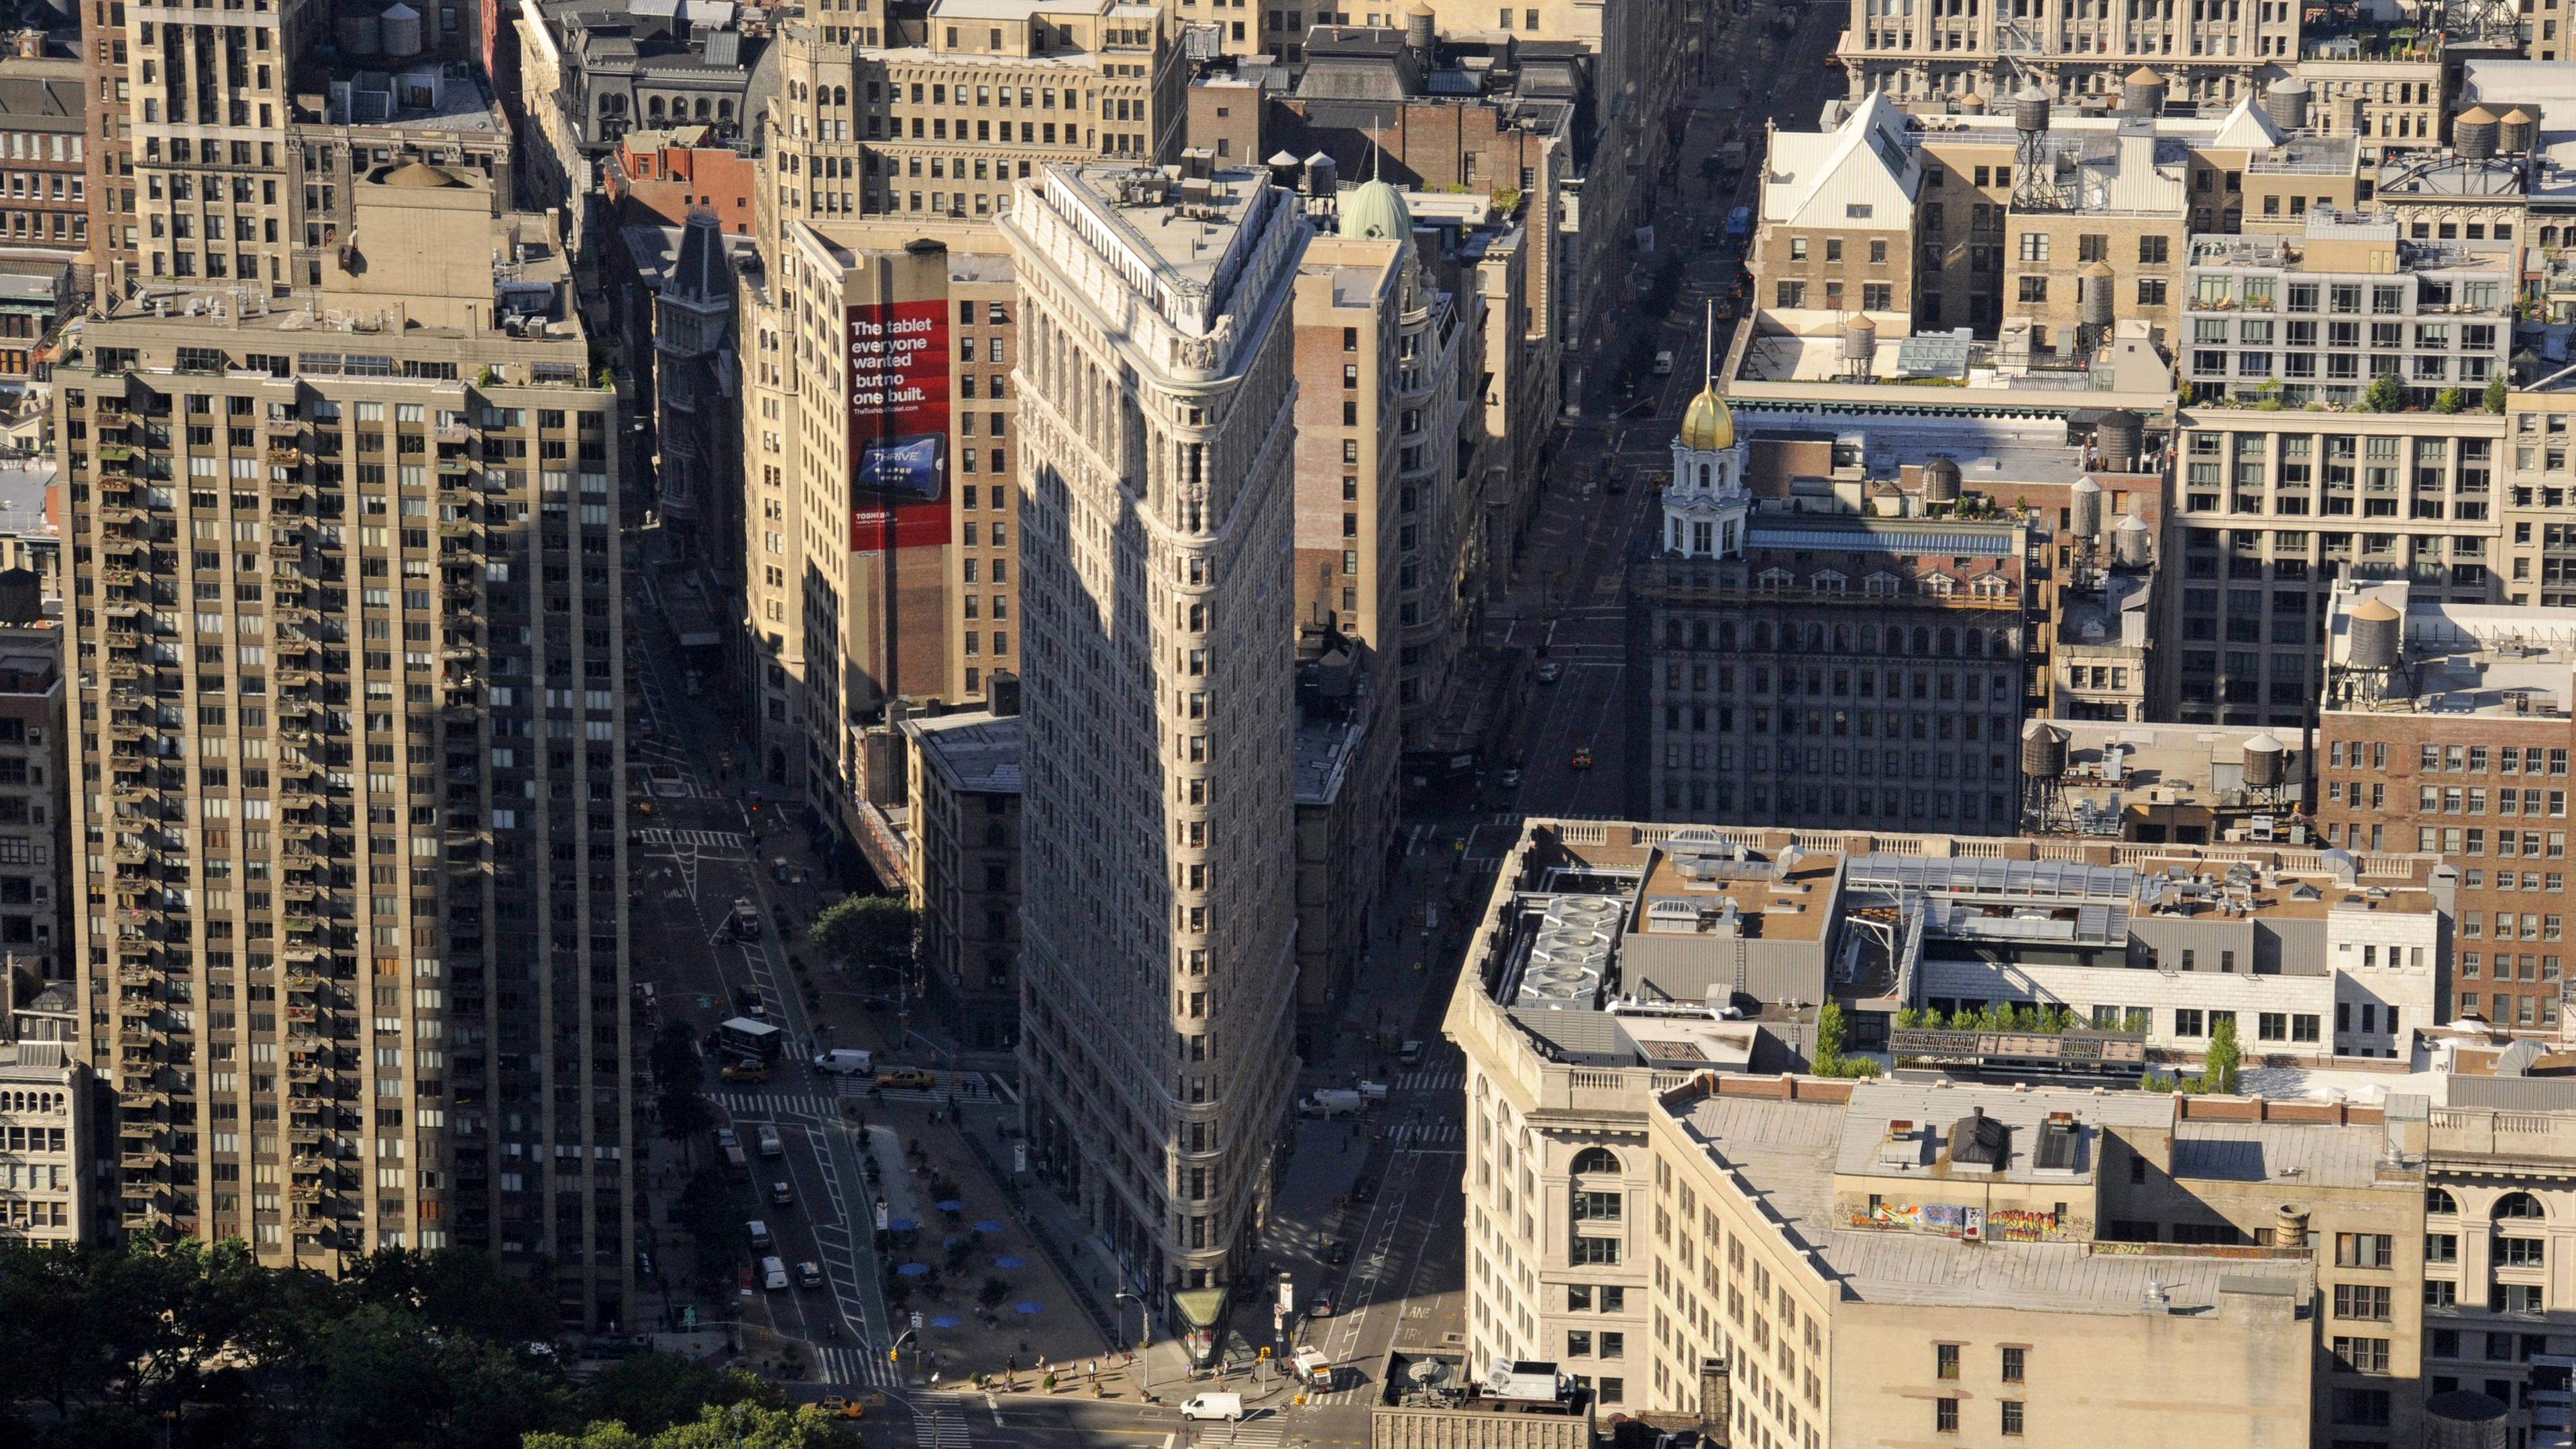 Flatiron-Gebäude in New York, aufgenommen am 05.07.2011